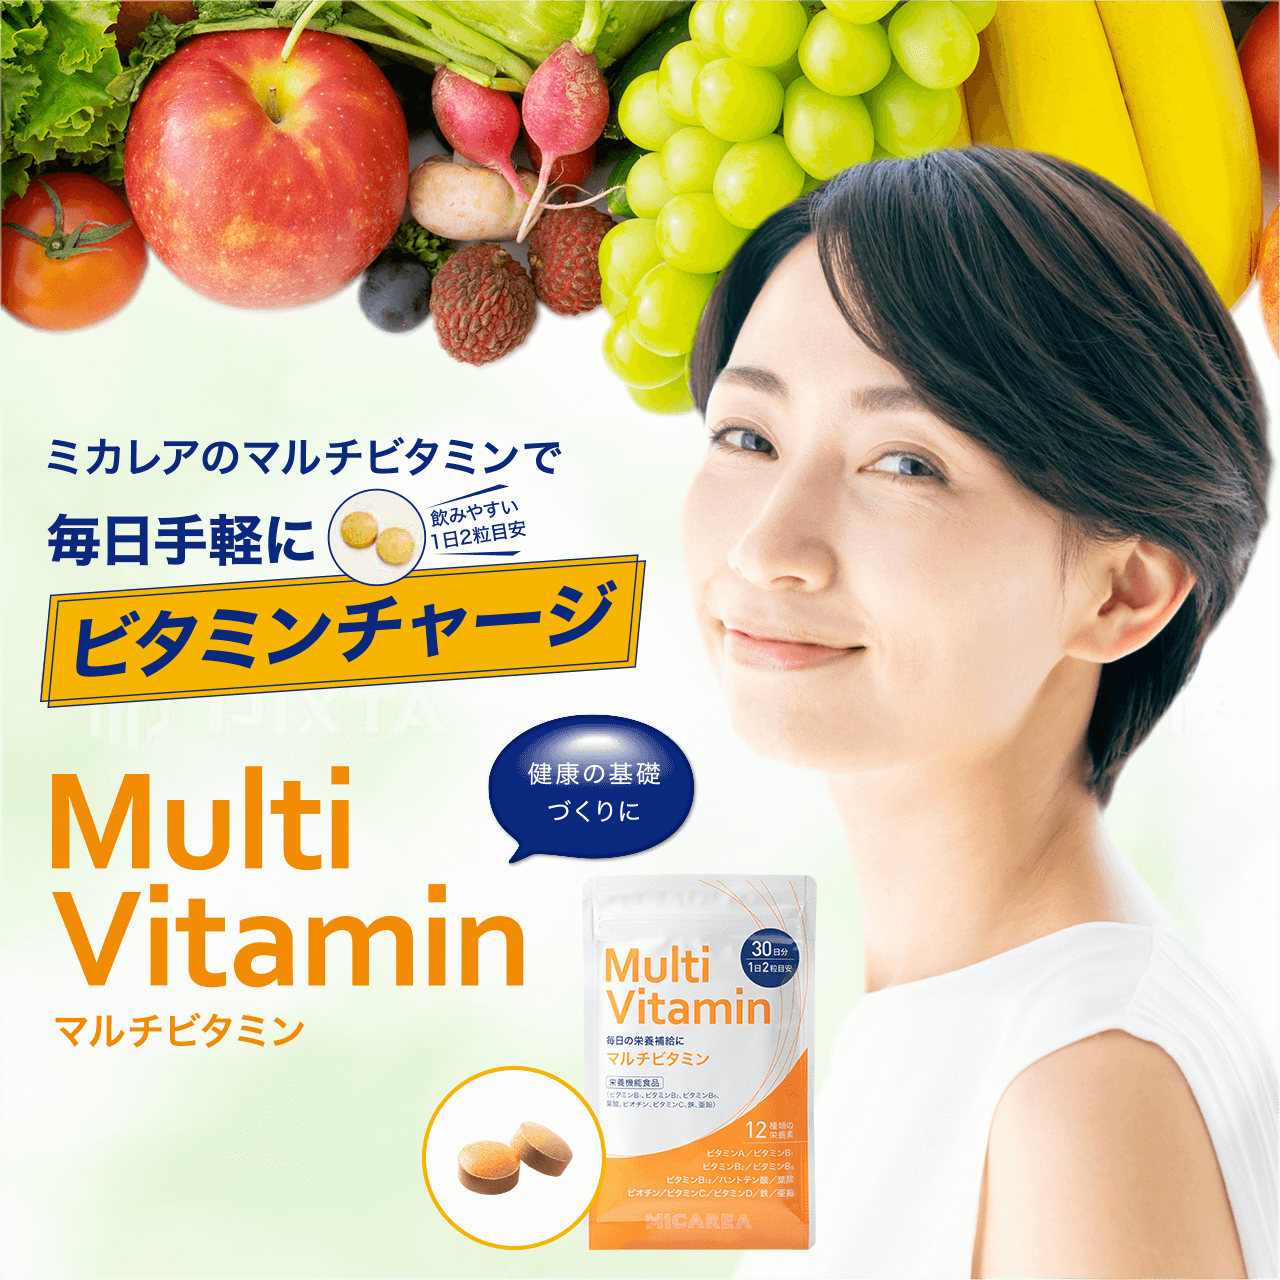 ミカレアのマルチビタミンで毎日手軽にビタミンチャージ 飲みやすい1日2粒目安 Multi Vitamin マルチビタミン 健康の基礎づくりに